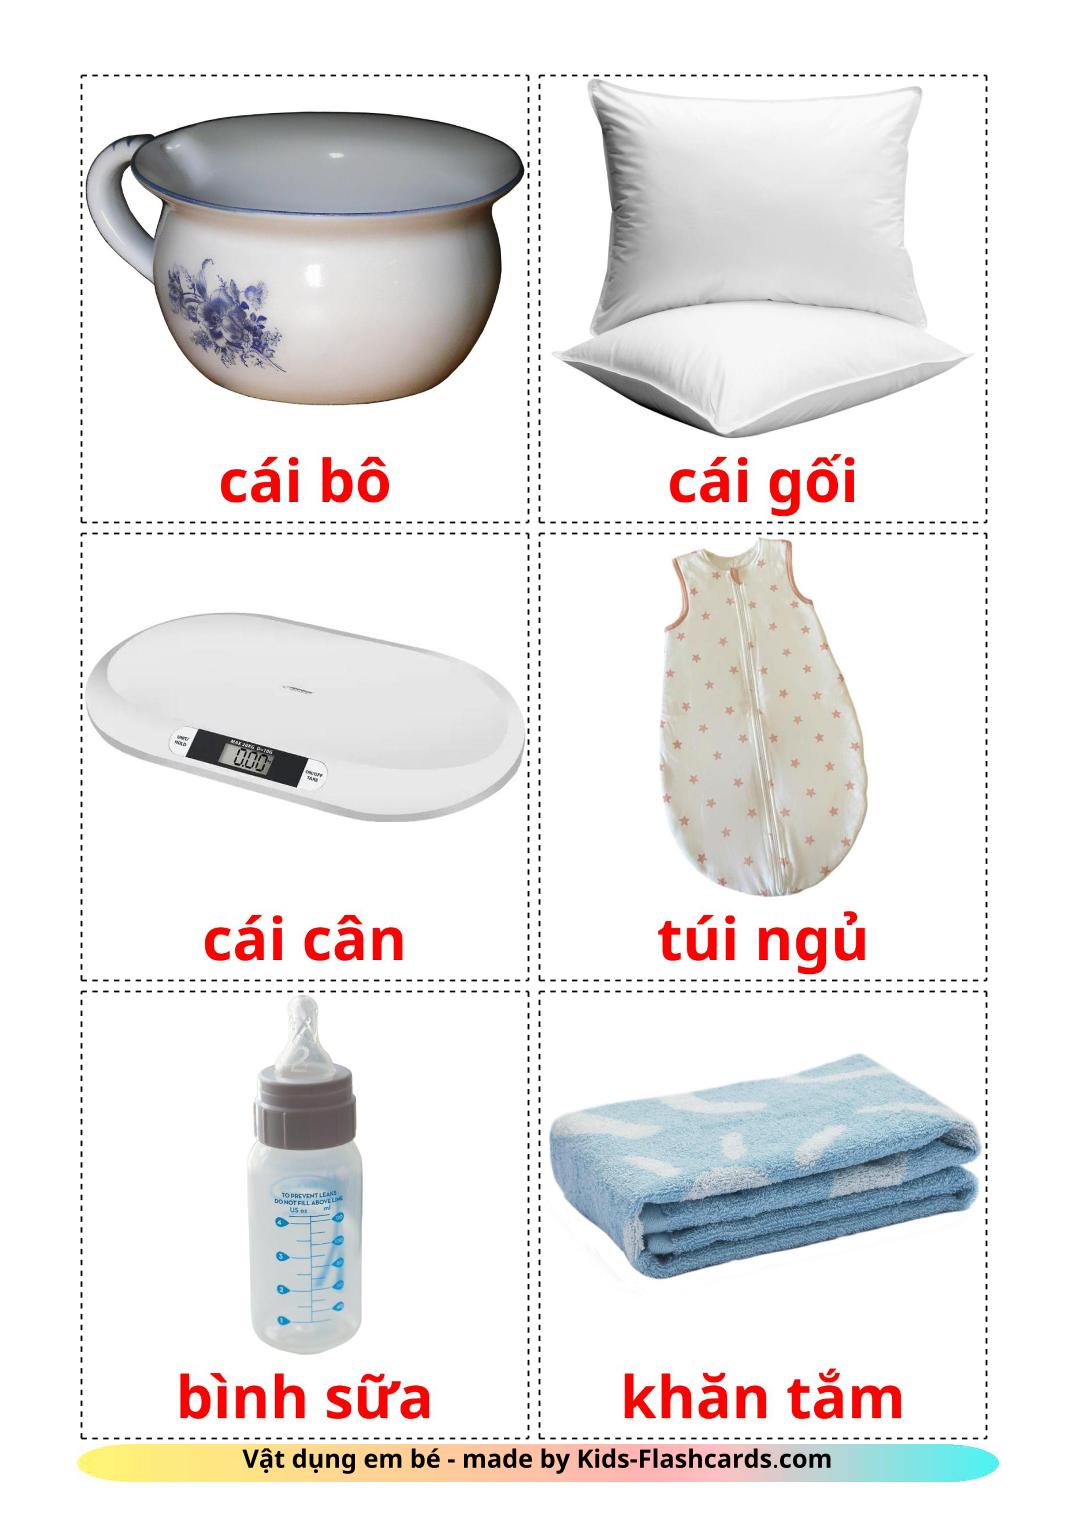 Coisas de Bebê - 19 Flashcards vietnamitaes gratuitos para impressão